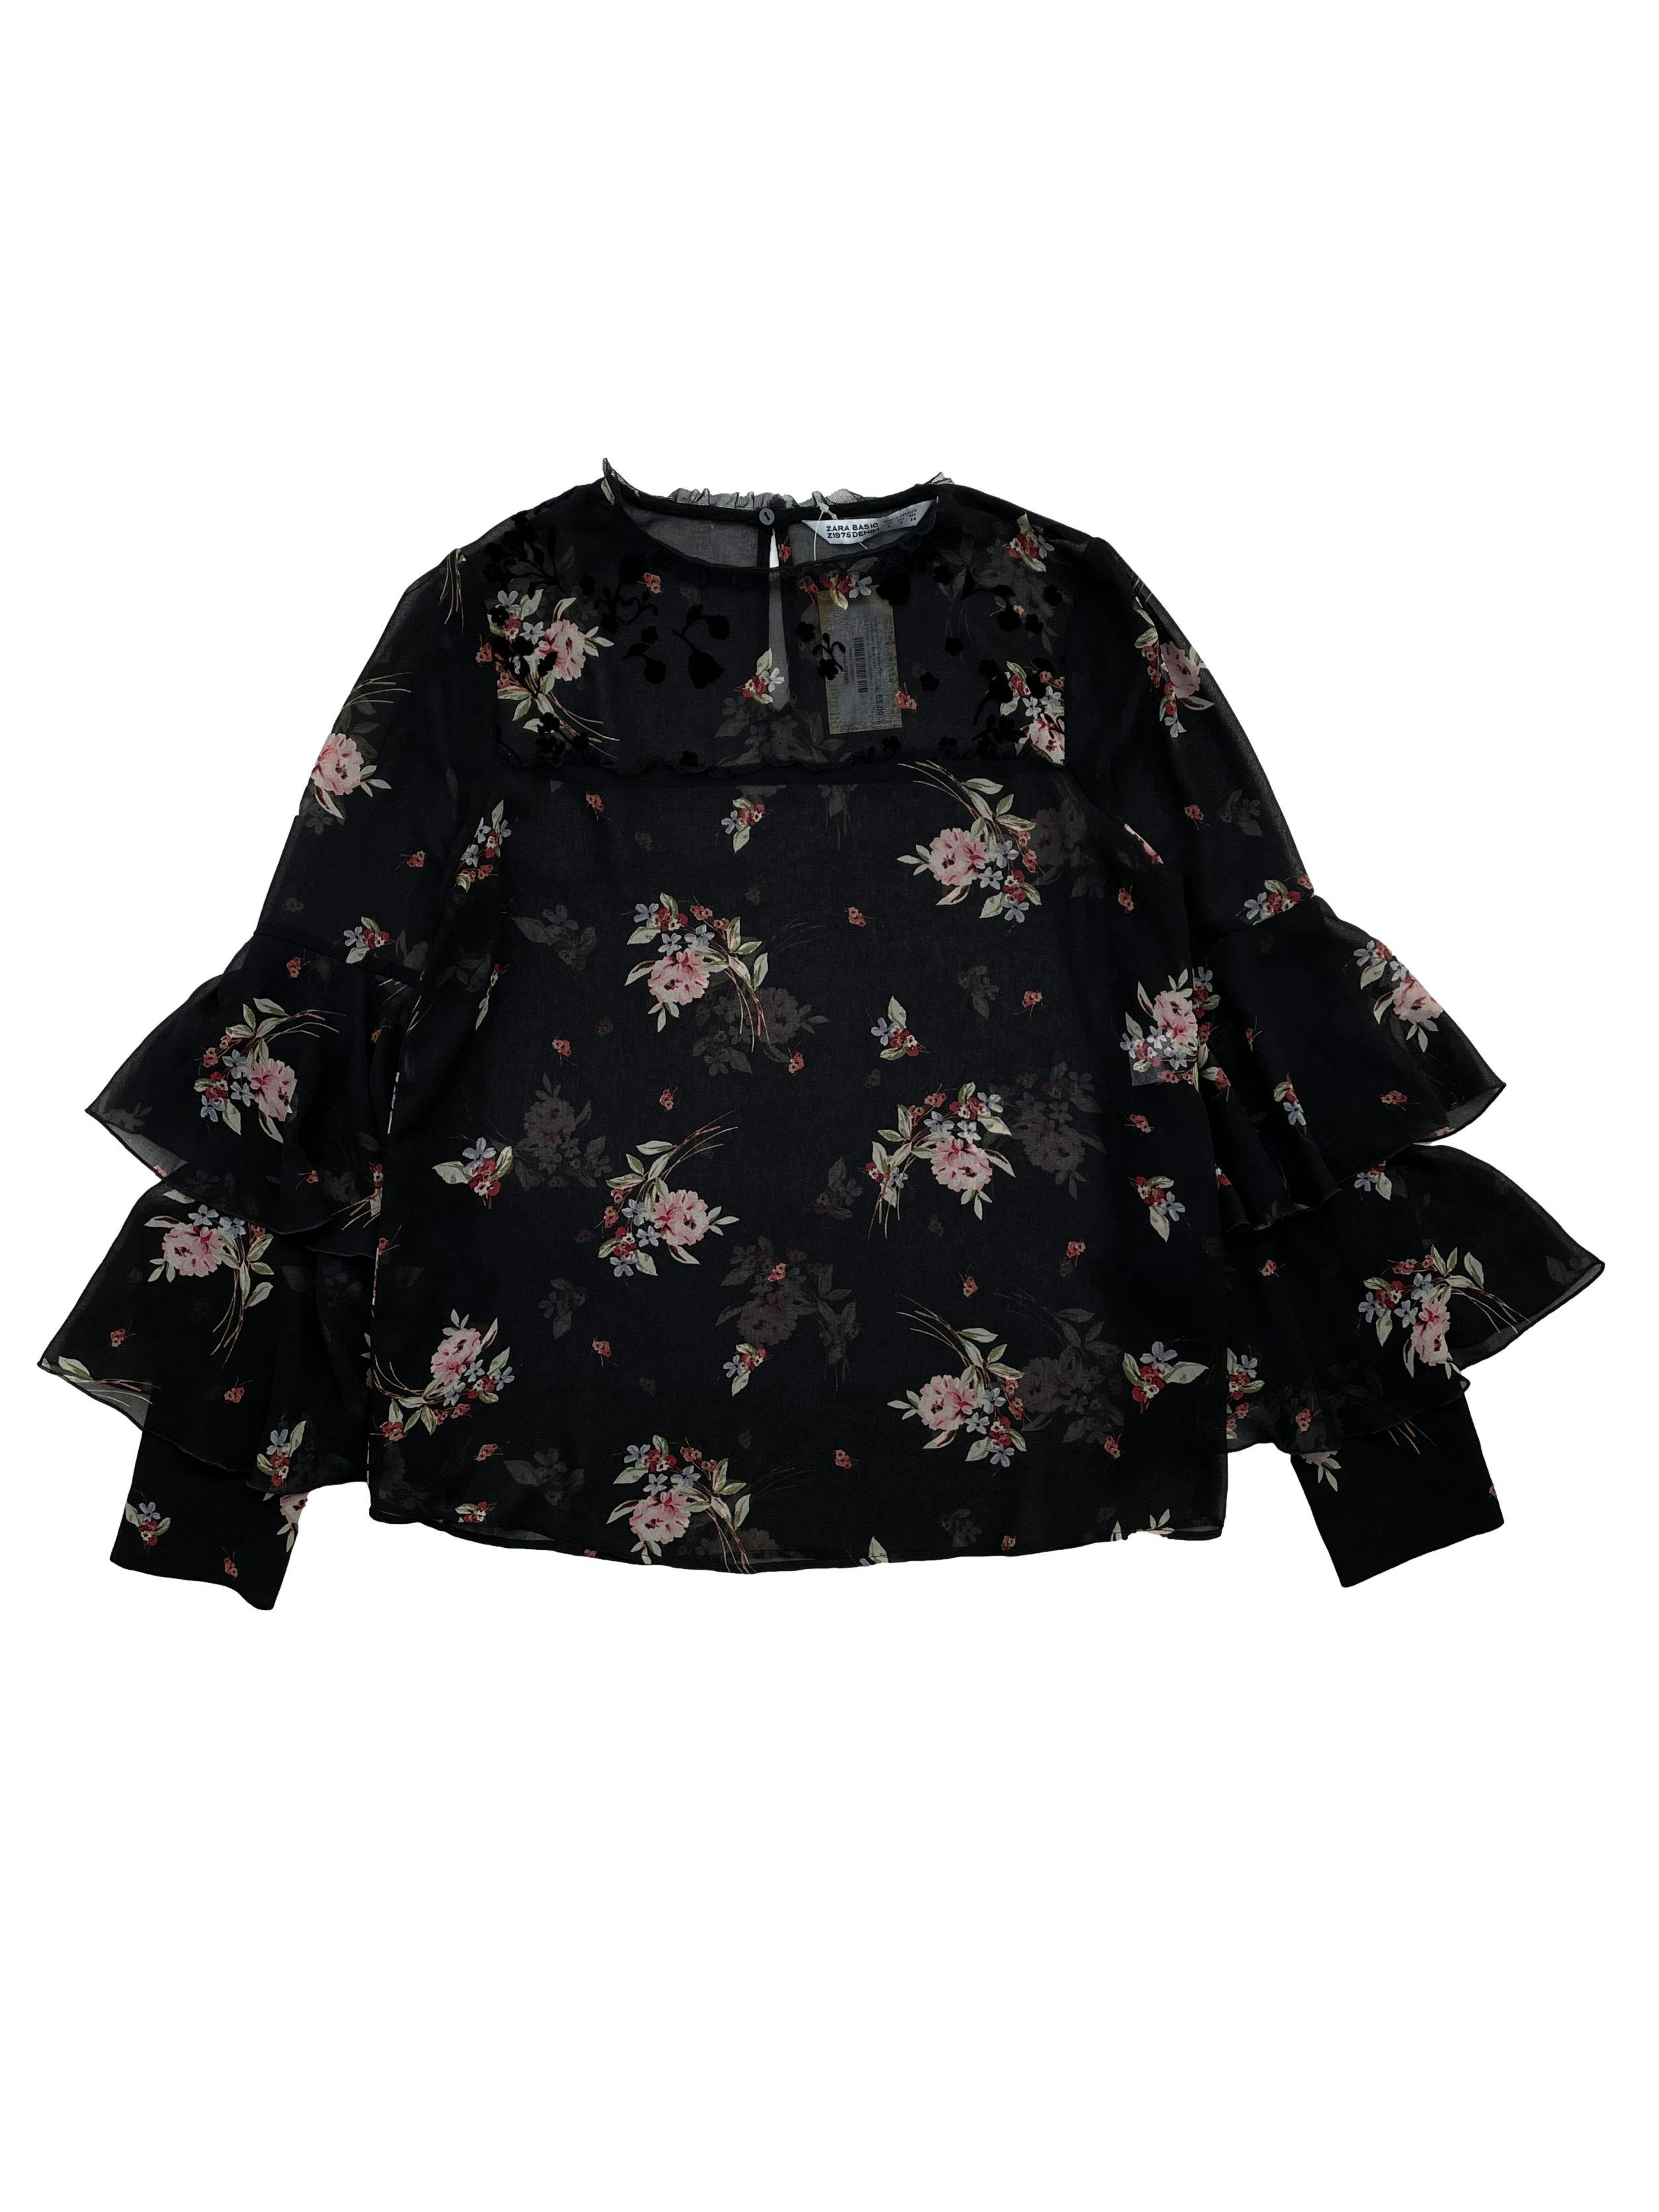 Blusa Zara negra de gasa con estampado floral, corte recto,mangas con vuelo y botones forrados (uno de repuesto) , abertura en espalda con botón. Busto 94cm, Largo 58cm.